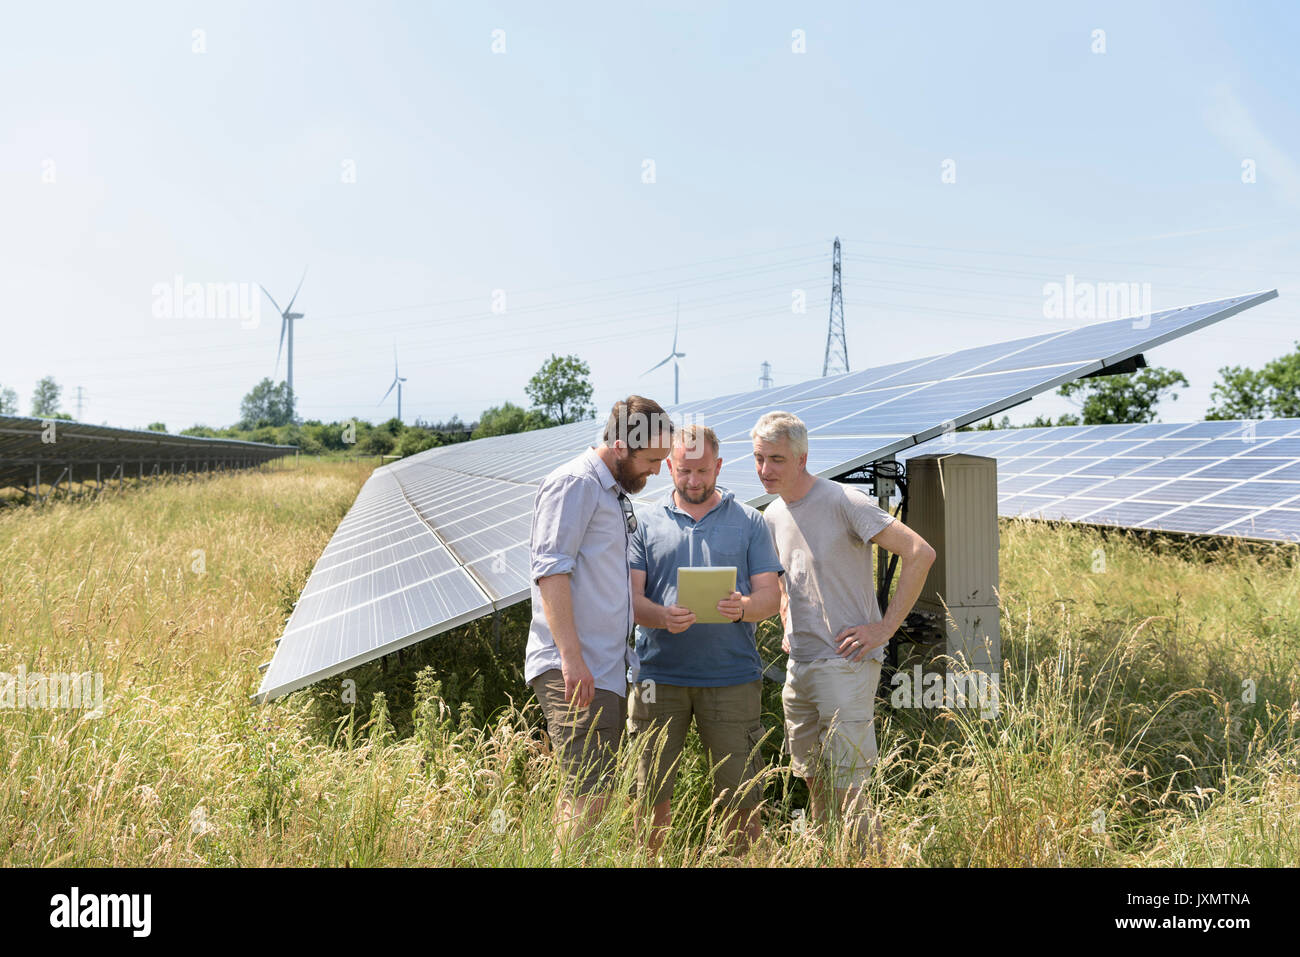 Los miembros de la comunidad local mediante tableta digital app para mirar el rendimiento energético de la granja solar Foto de stock